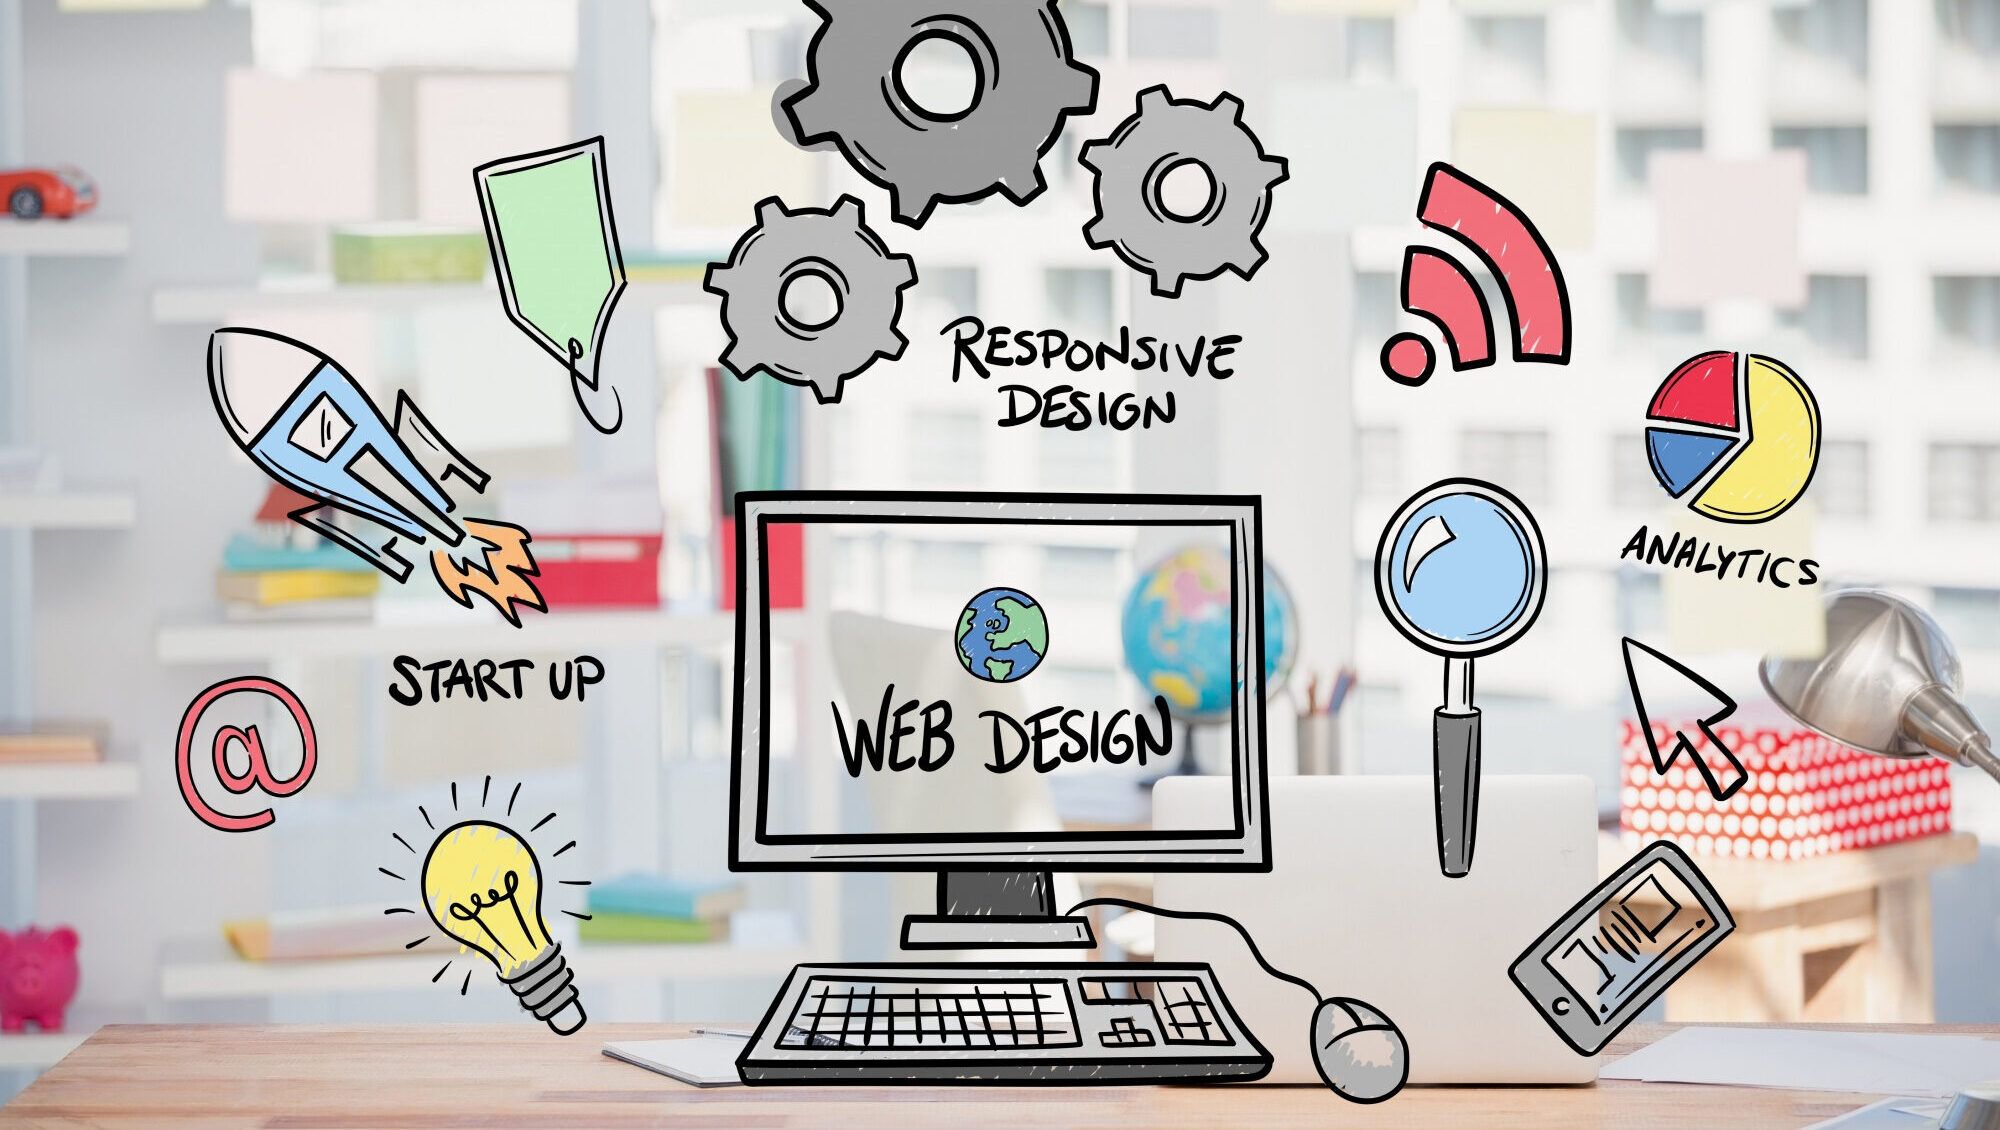 ¿Cómo mejorar la conversión de visitantes en clientes a través del diseño web?